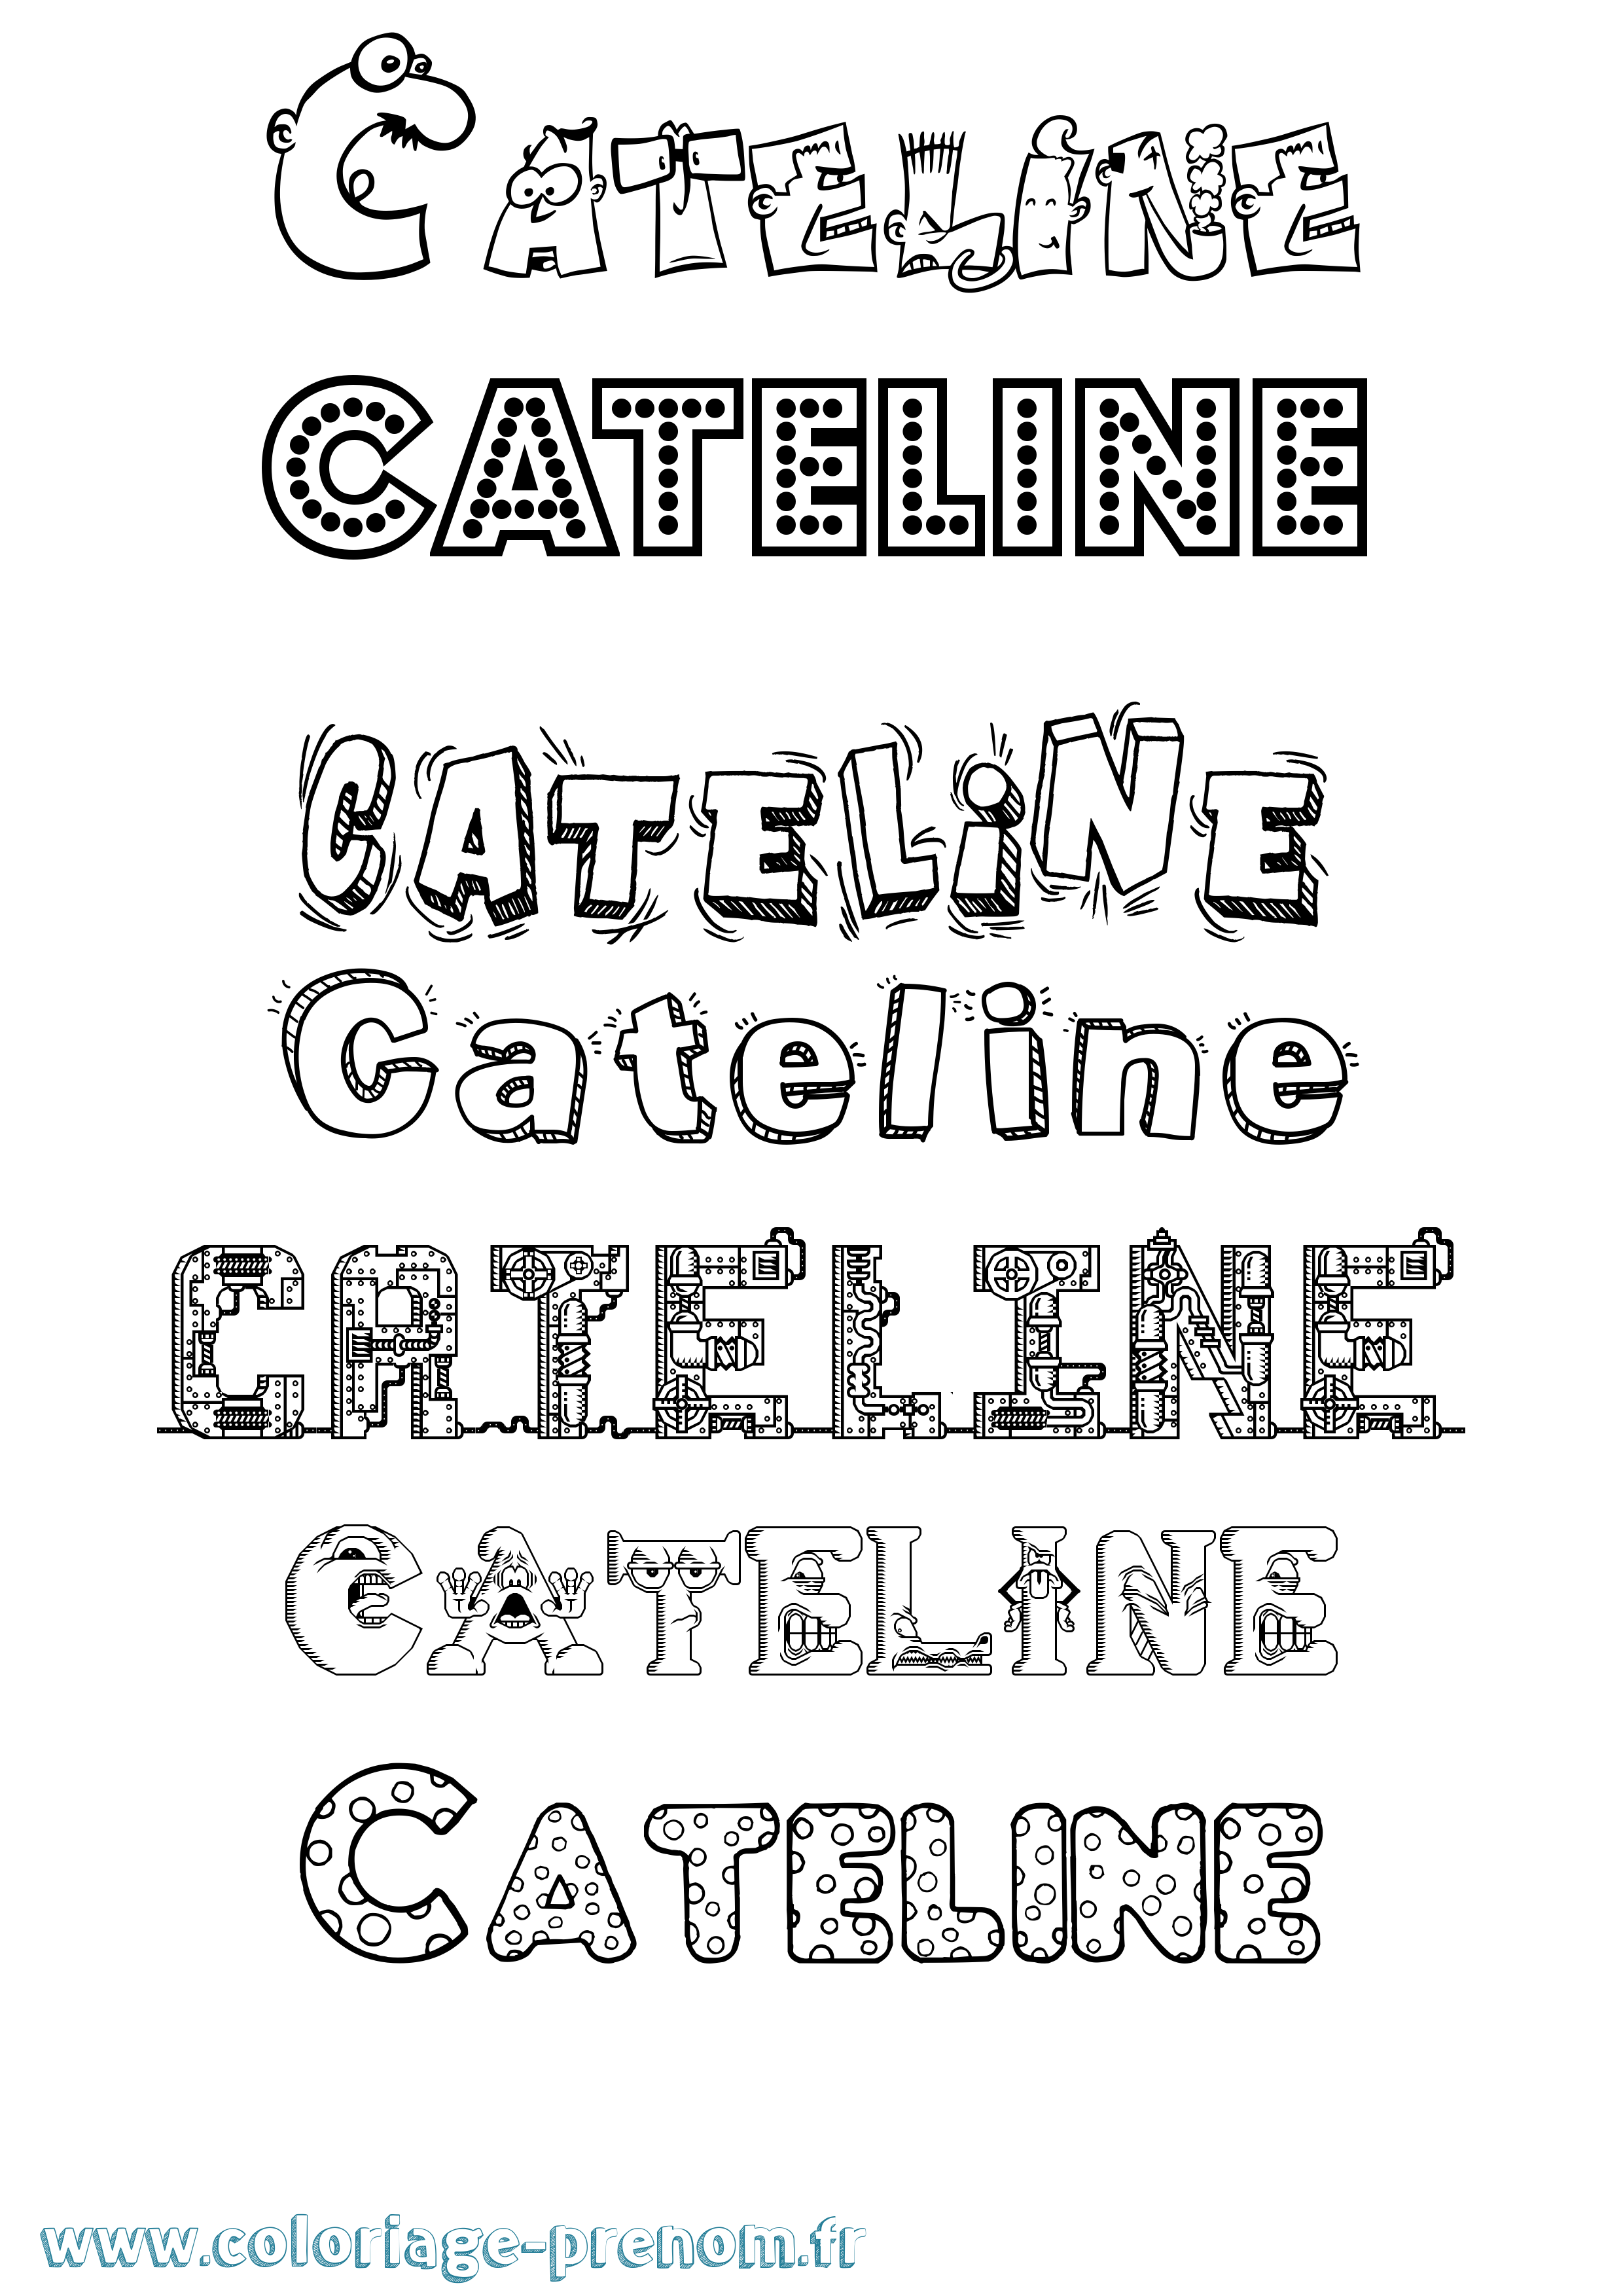 Coloriage prénom Cateline Fun